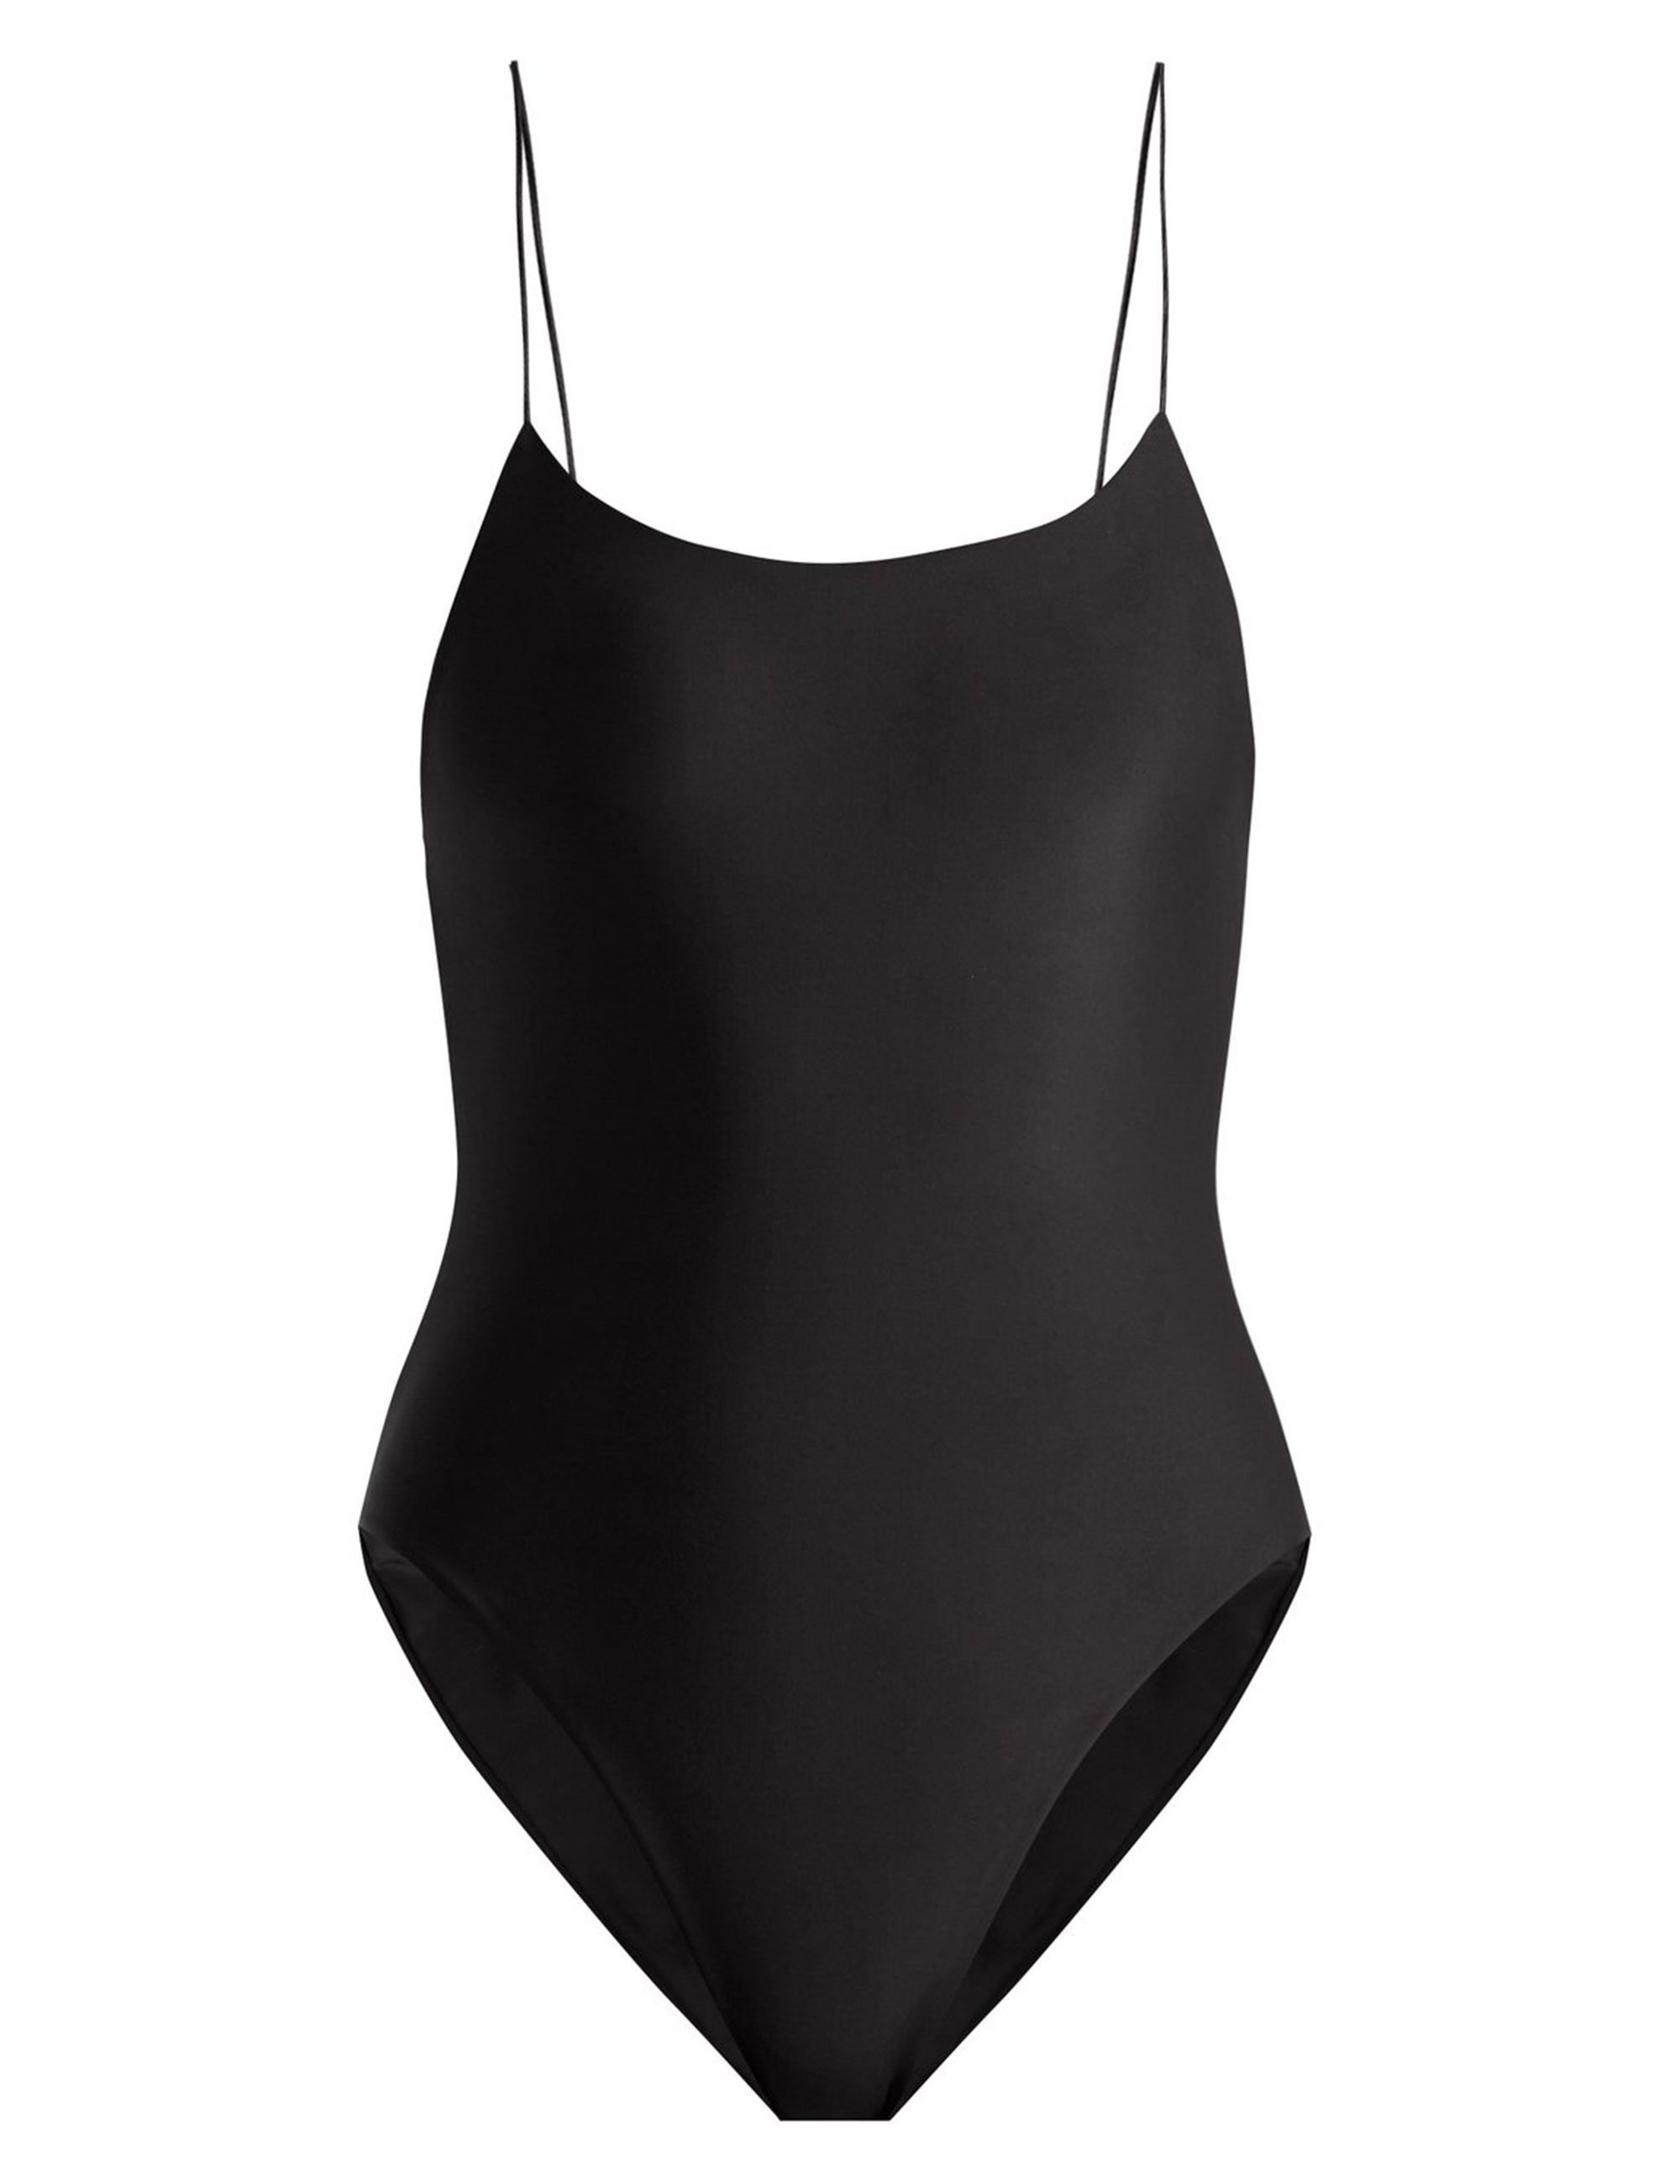 https://hips.hearstapps.com/hmg-prod/images/jade-swim-black-swimsuit-1526048936.jpg